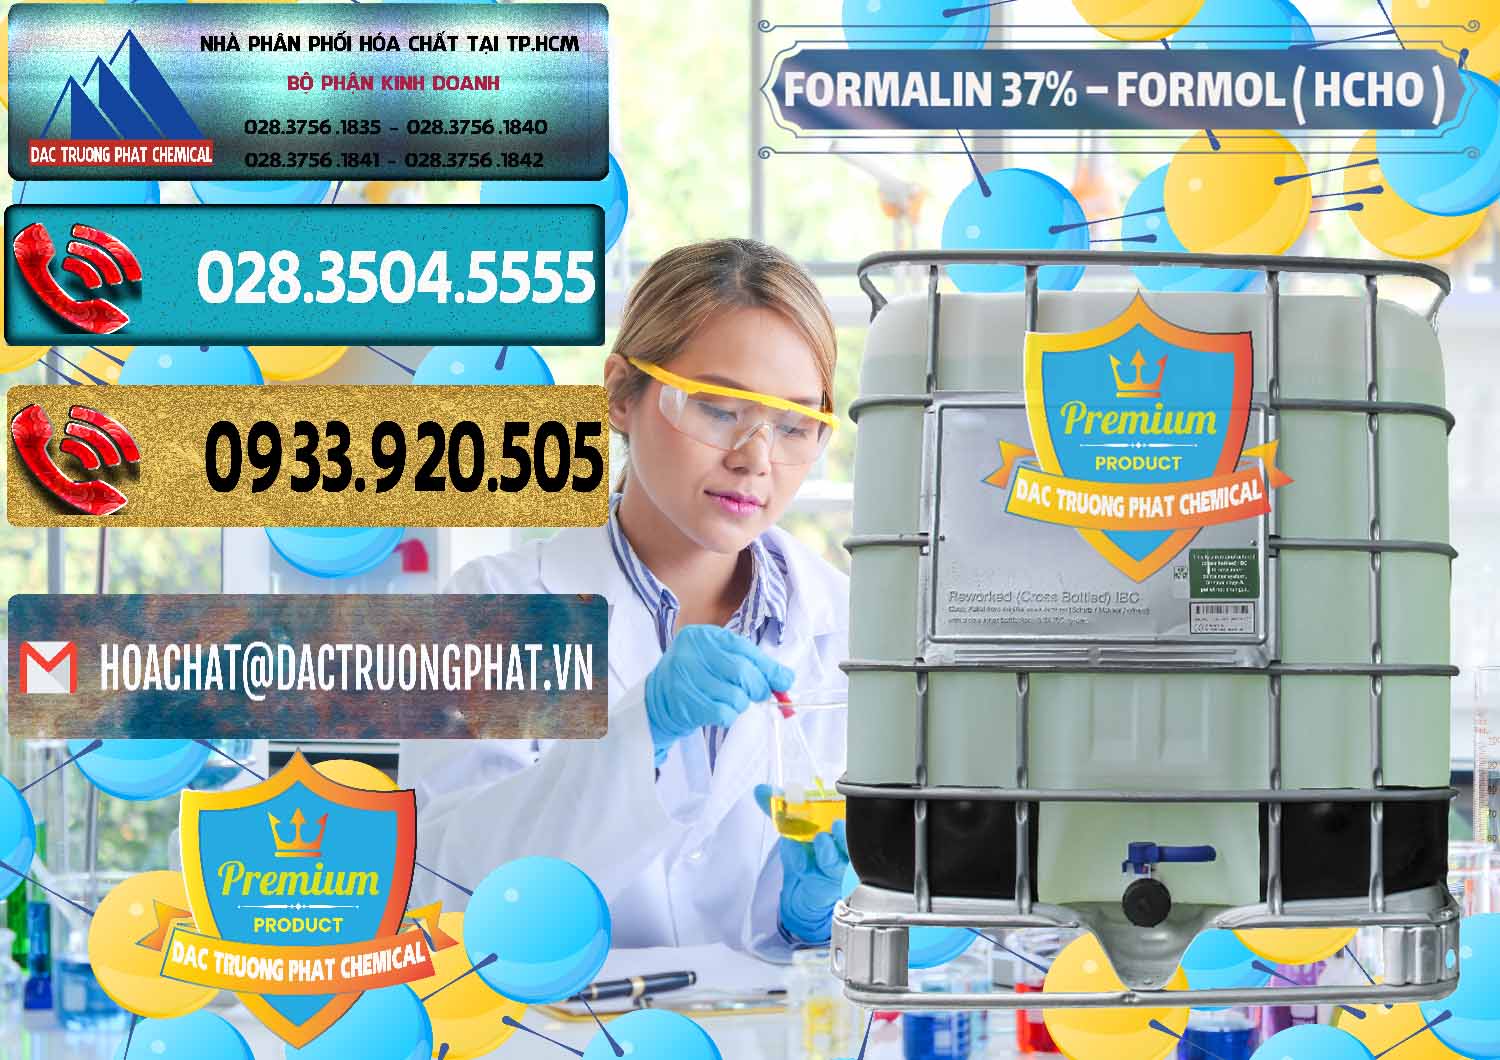 Công ty chuyên kinh doanh và bán Formalin - Formol ( HCHO ) 37% Việt Nam - 0187 - Công ty phân phối & bán hóa chất tại TP.HCM - hoachatdetnhuom.com